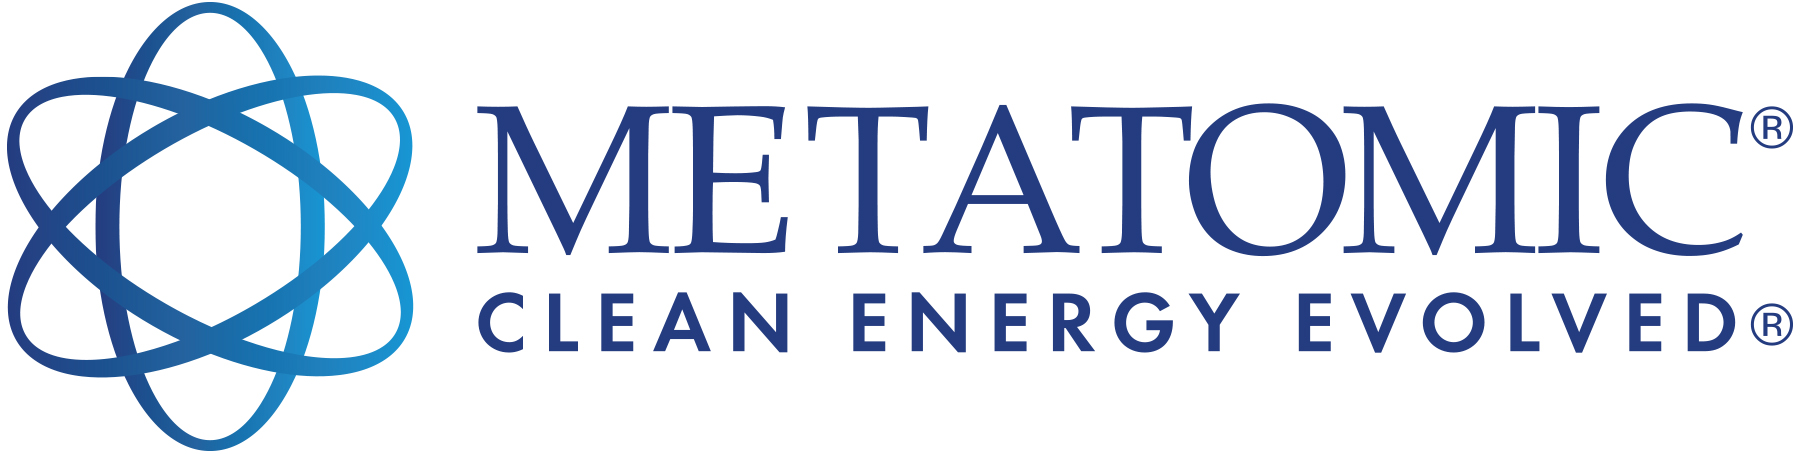 Metatomic, Inc. Logo